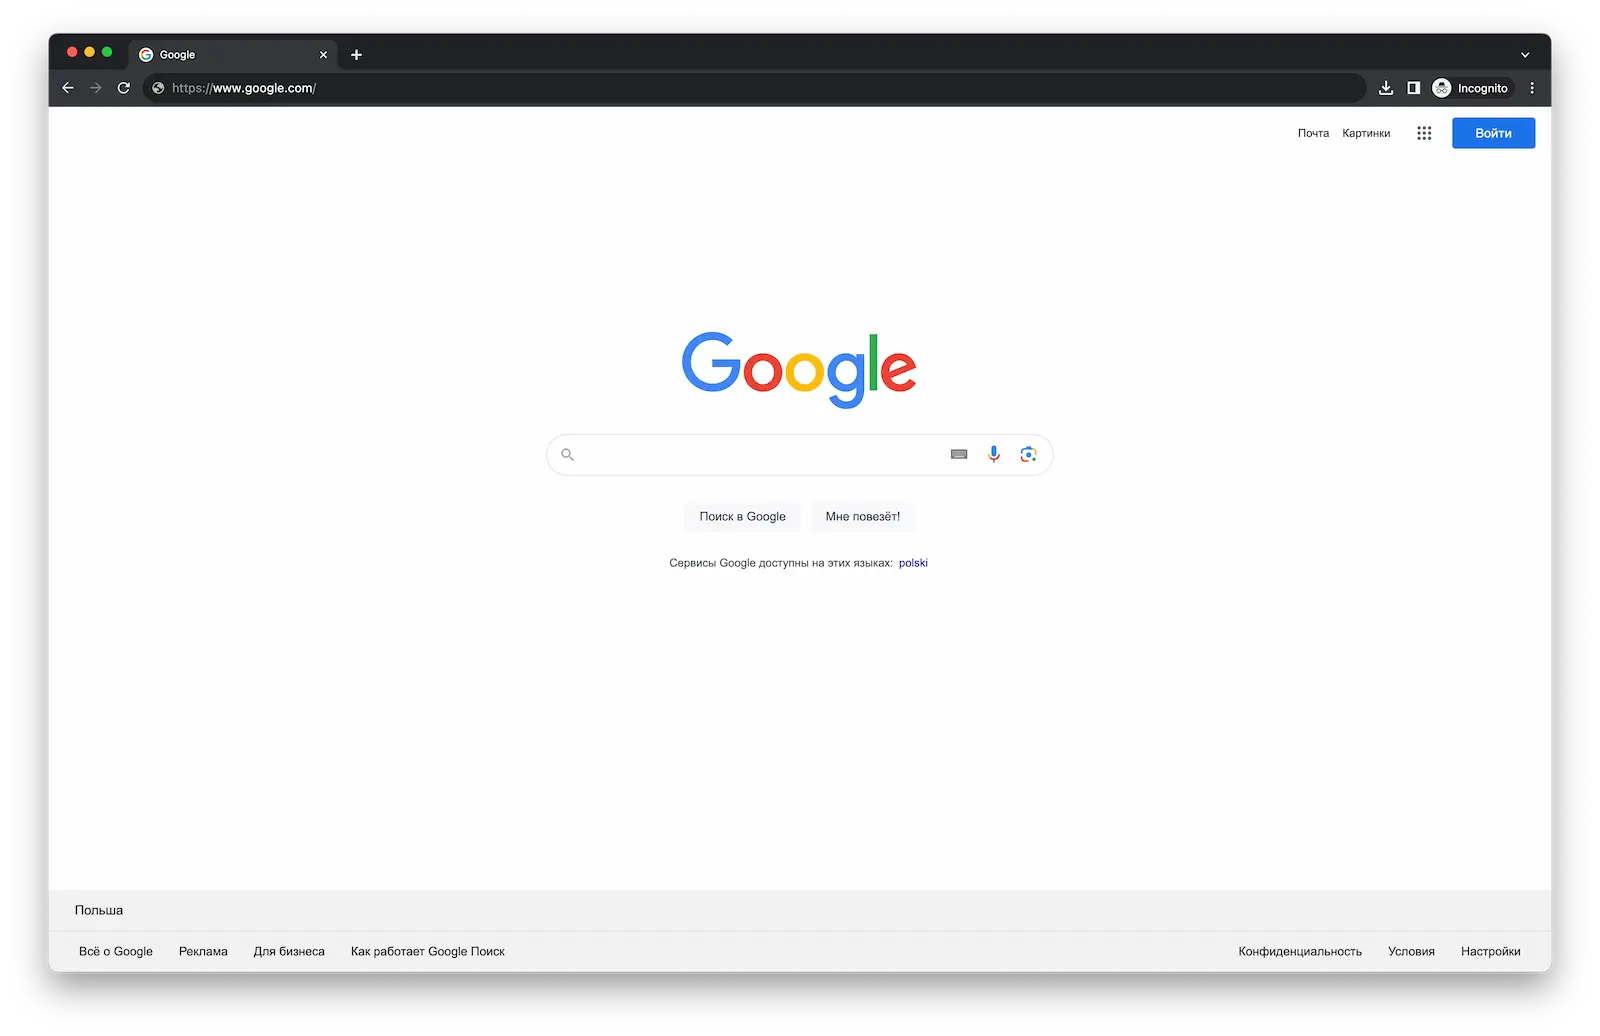 Google.com — простой и понятный интерфейс